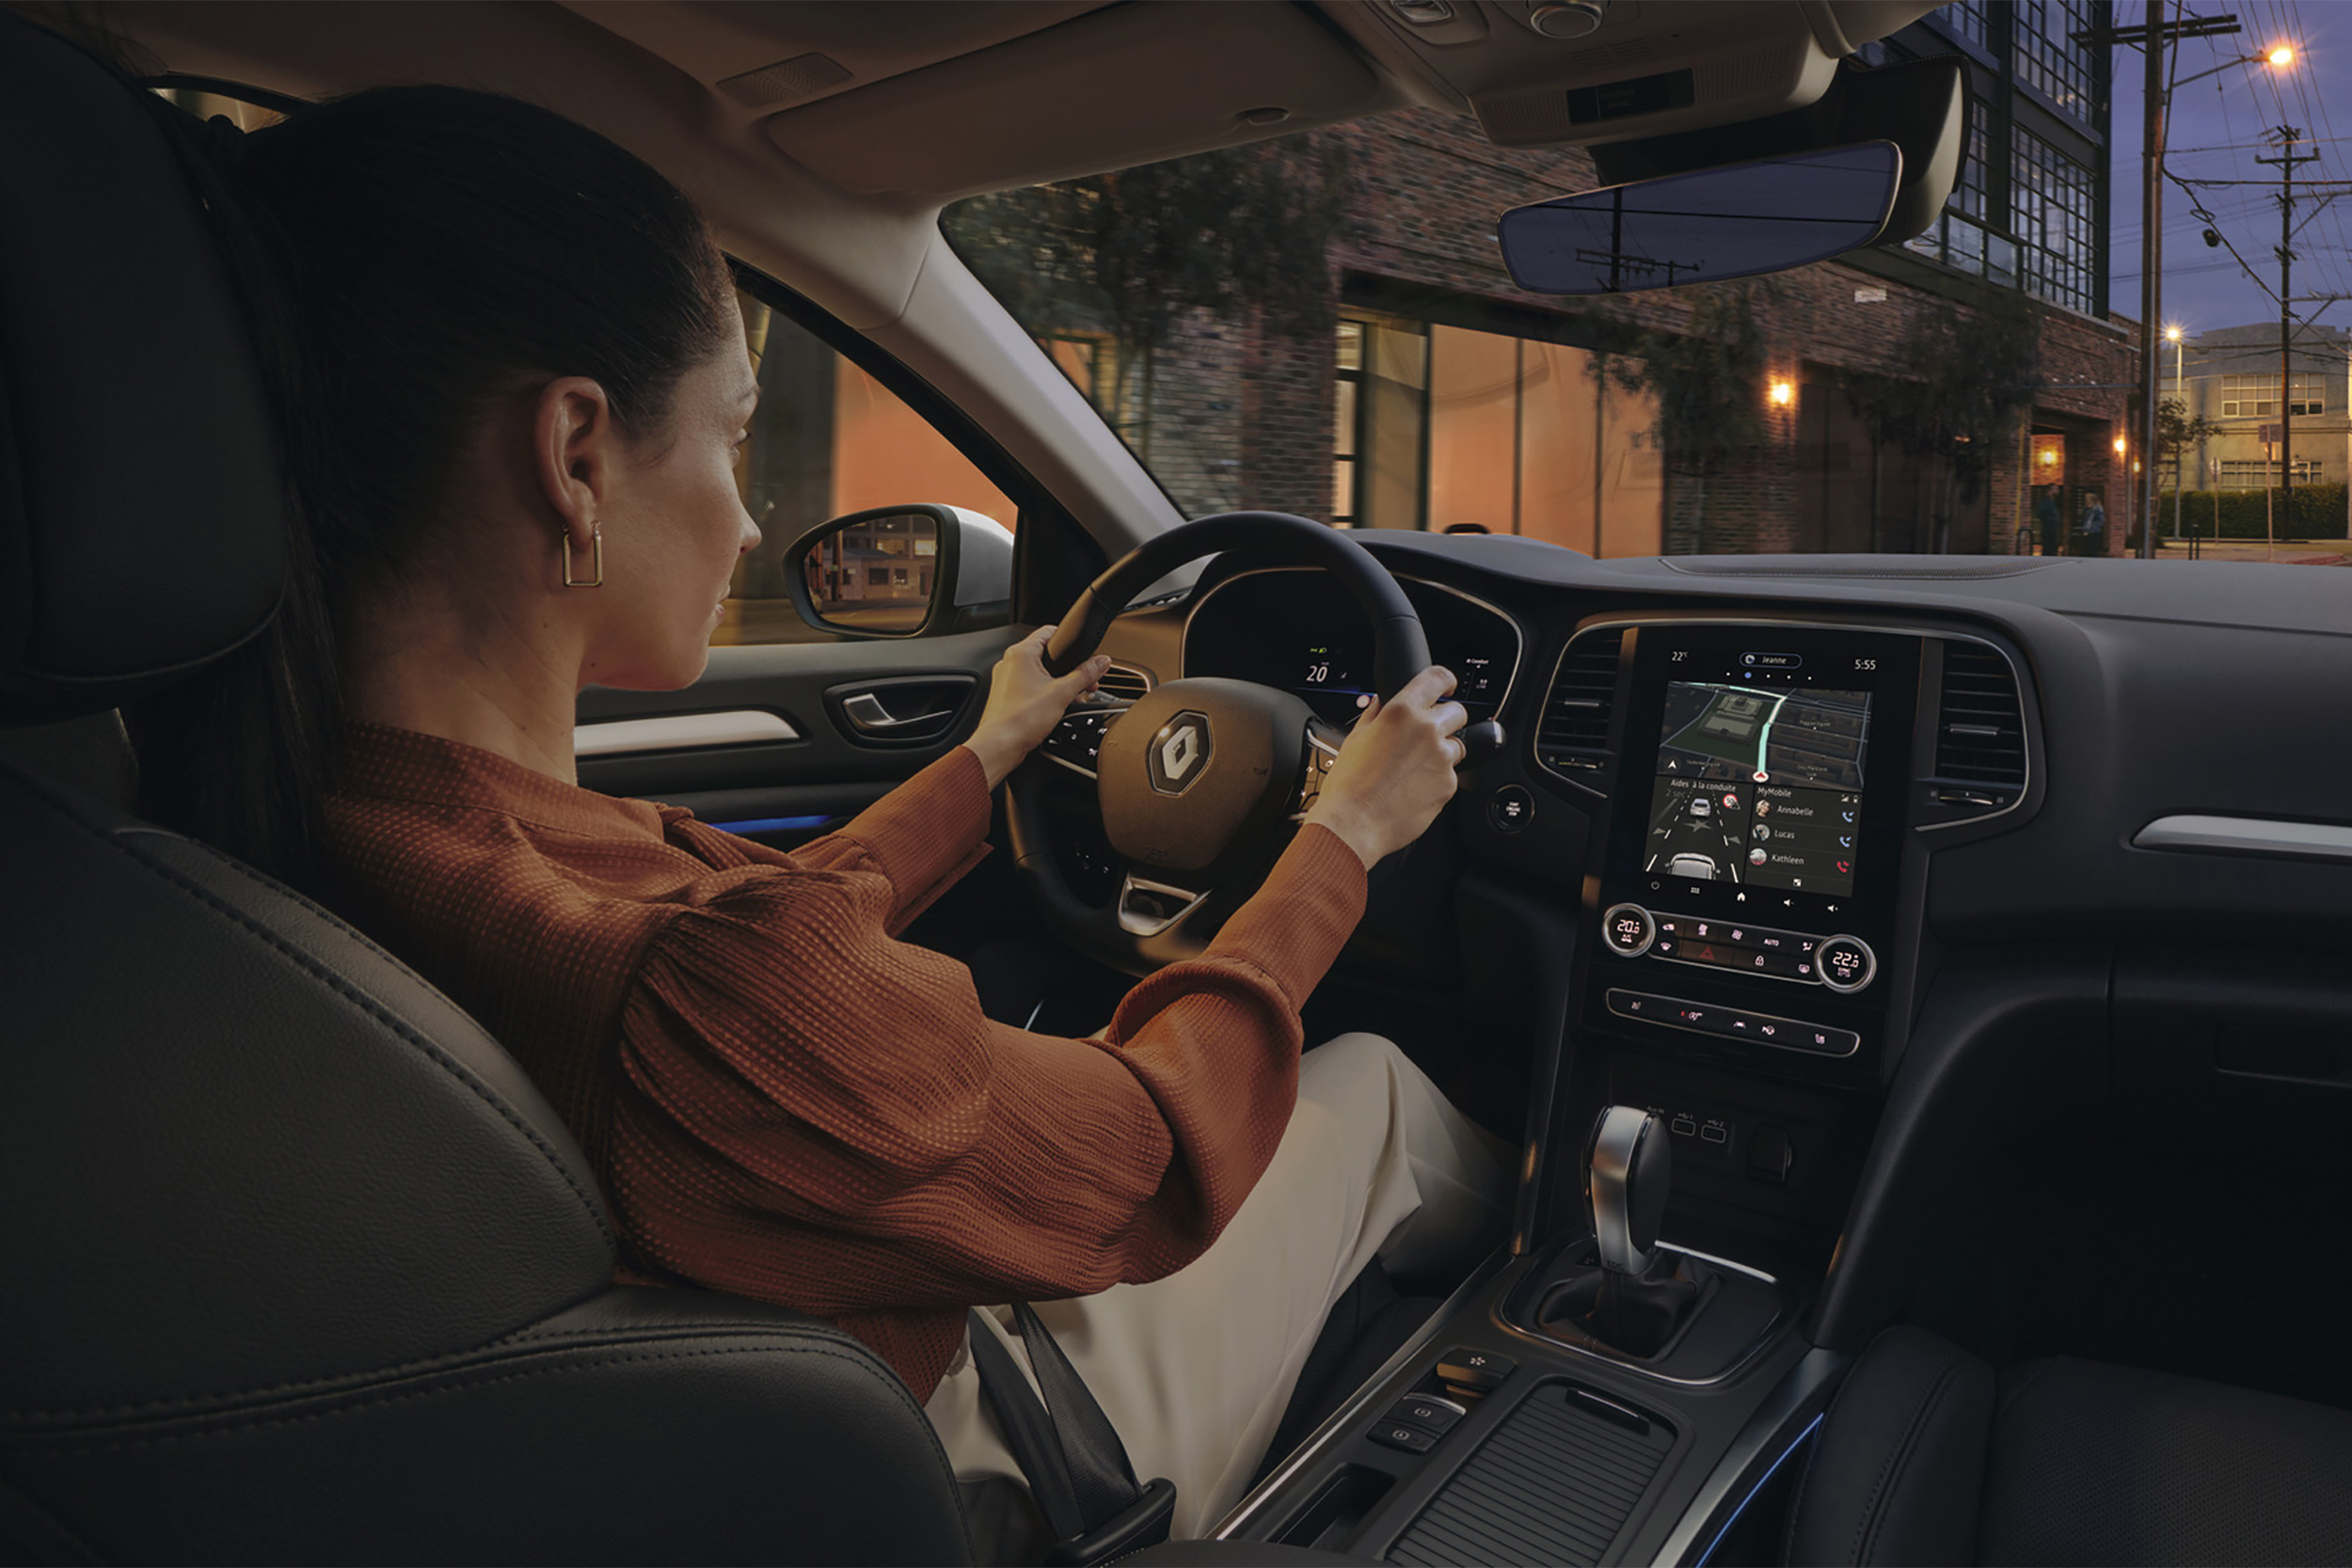 Moteris vairuoja hečbeką Renault MEGANE mieste, matomas automobilio interjeras: vairas, prietaisų skydas, centrinis ekranas ir centrinė konsolė